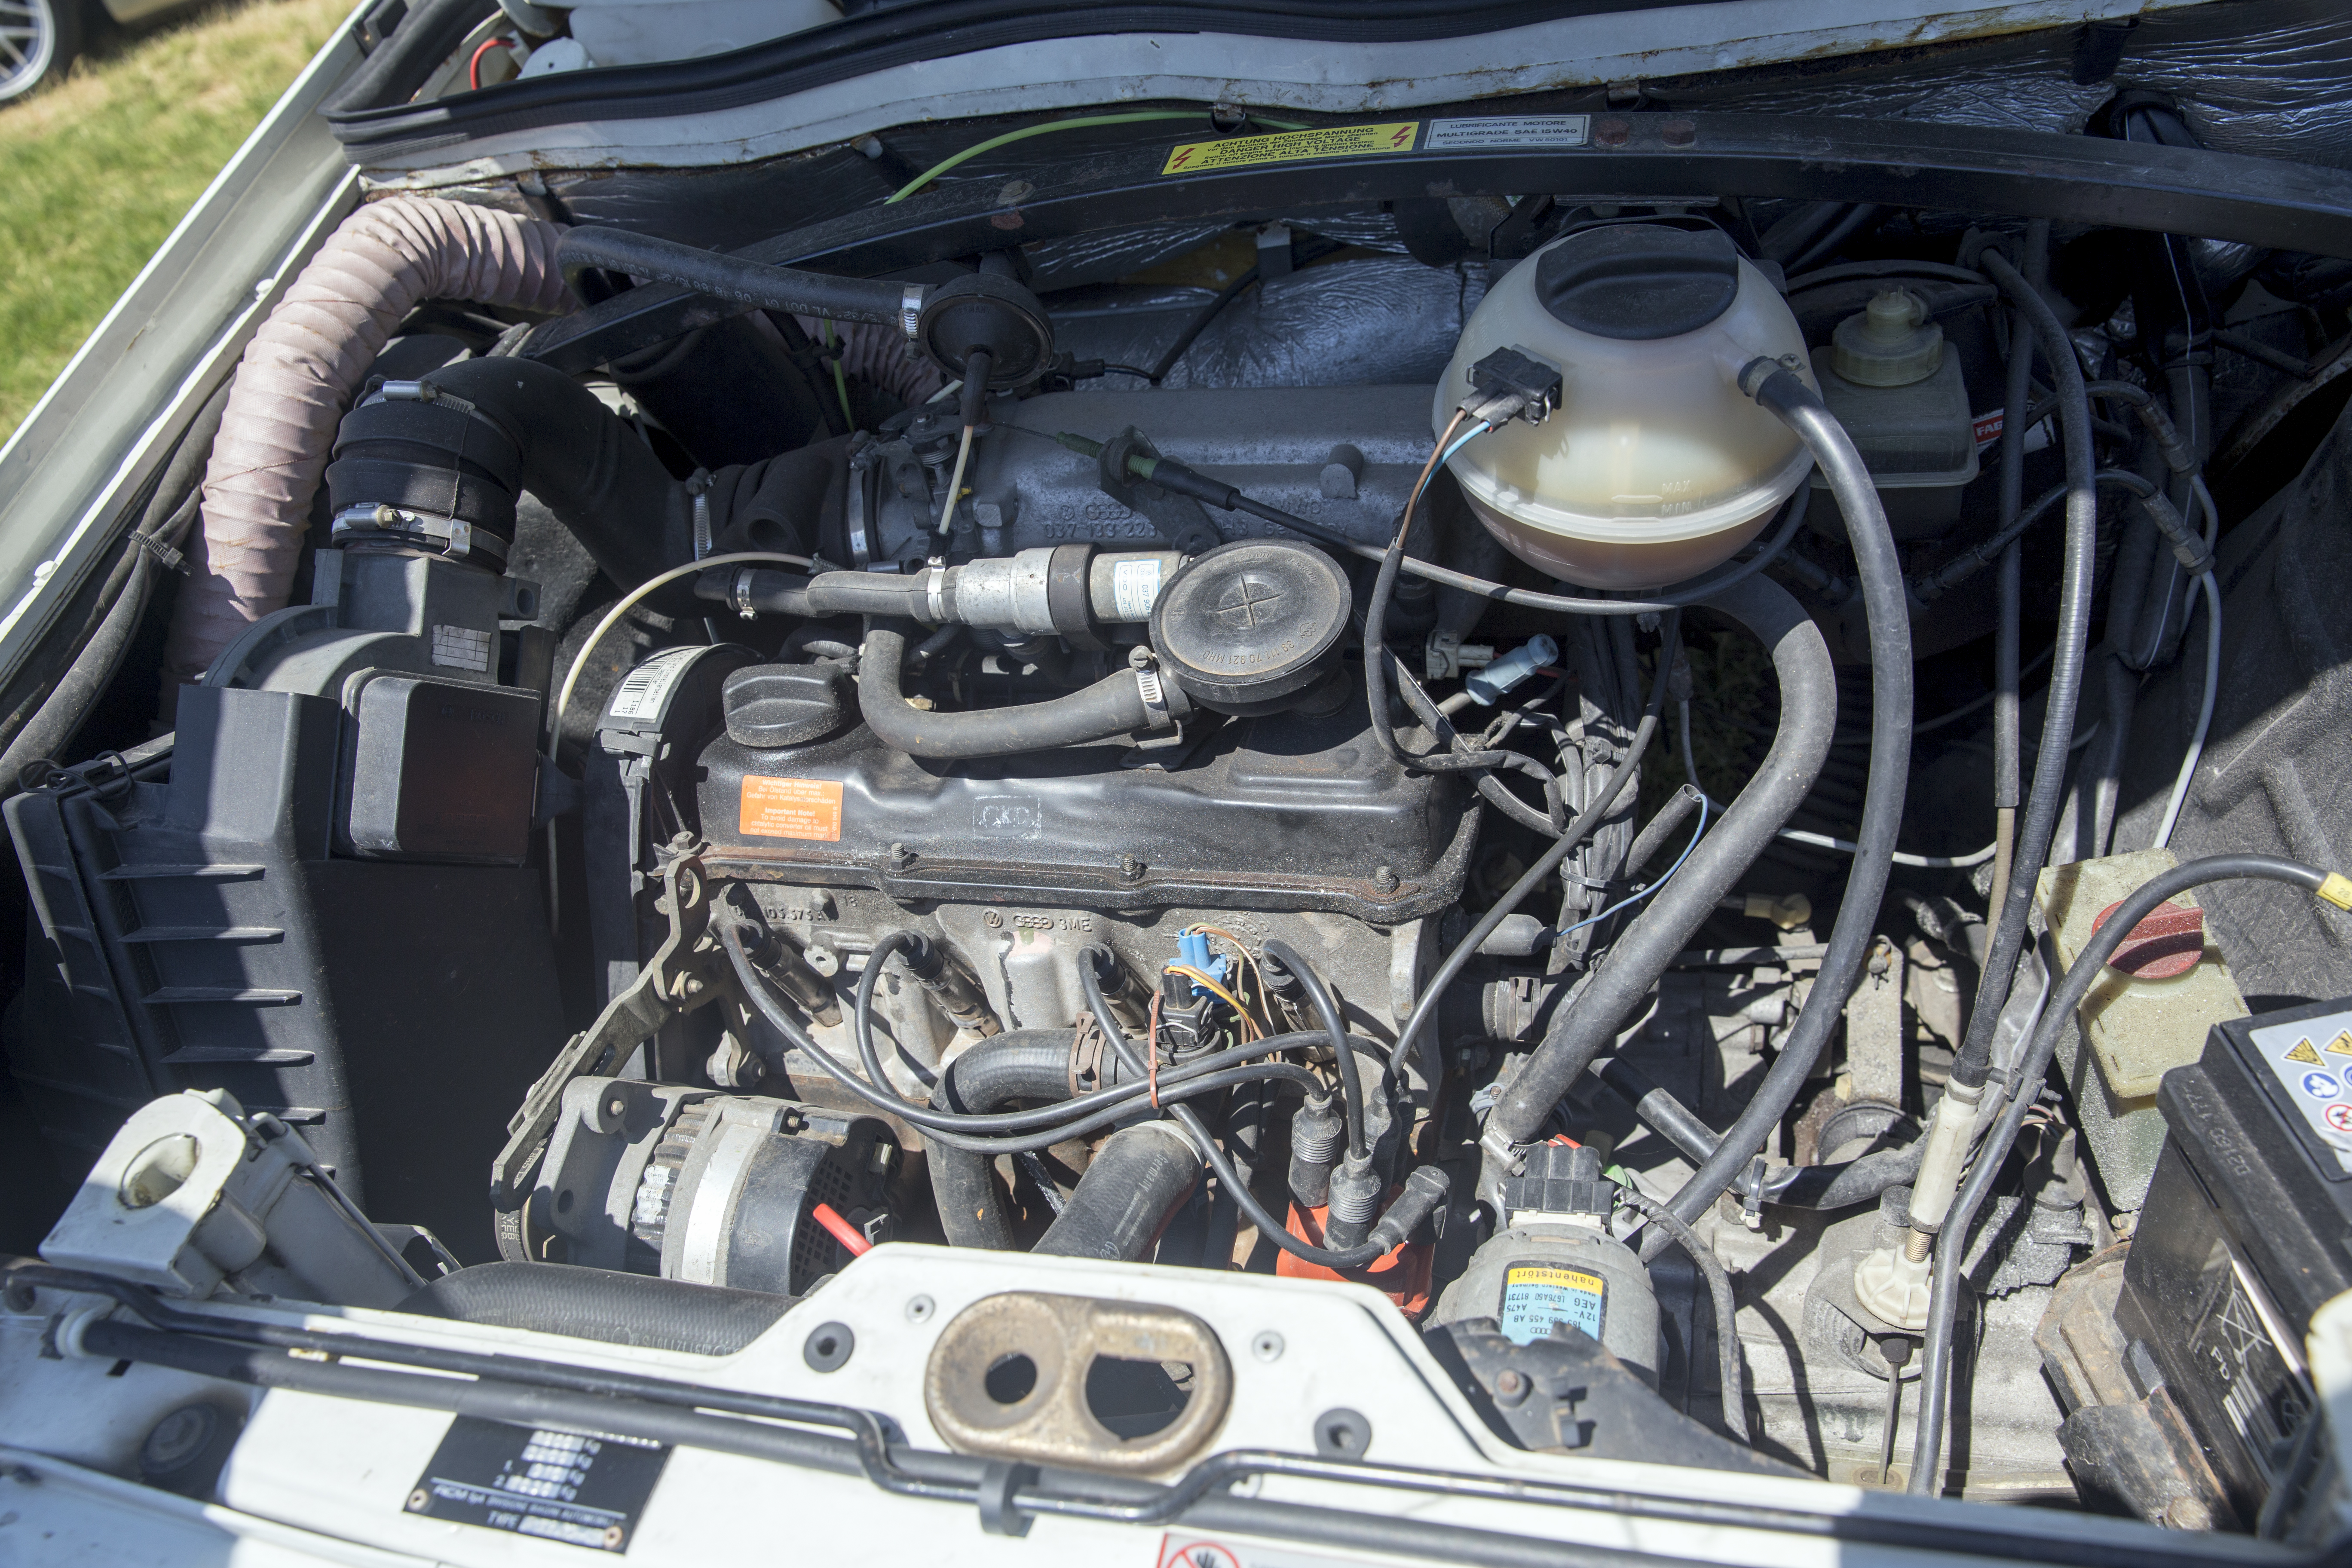 Volkswagen EA827 engine - Wikipedia